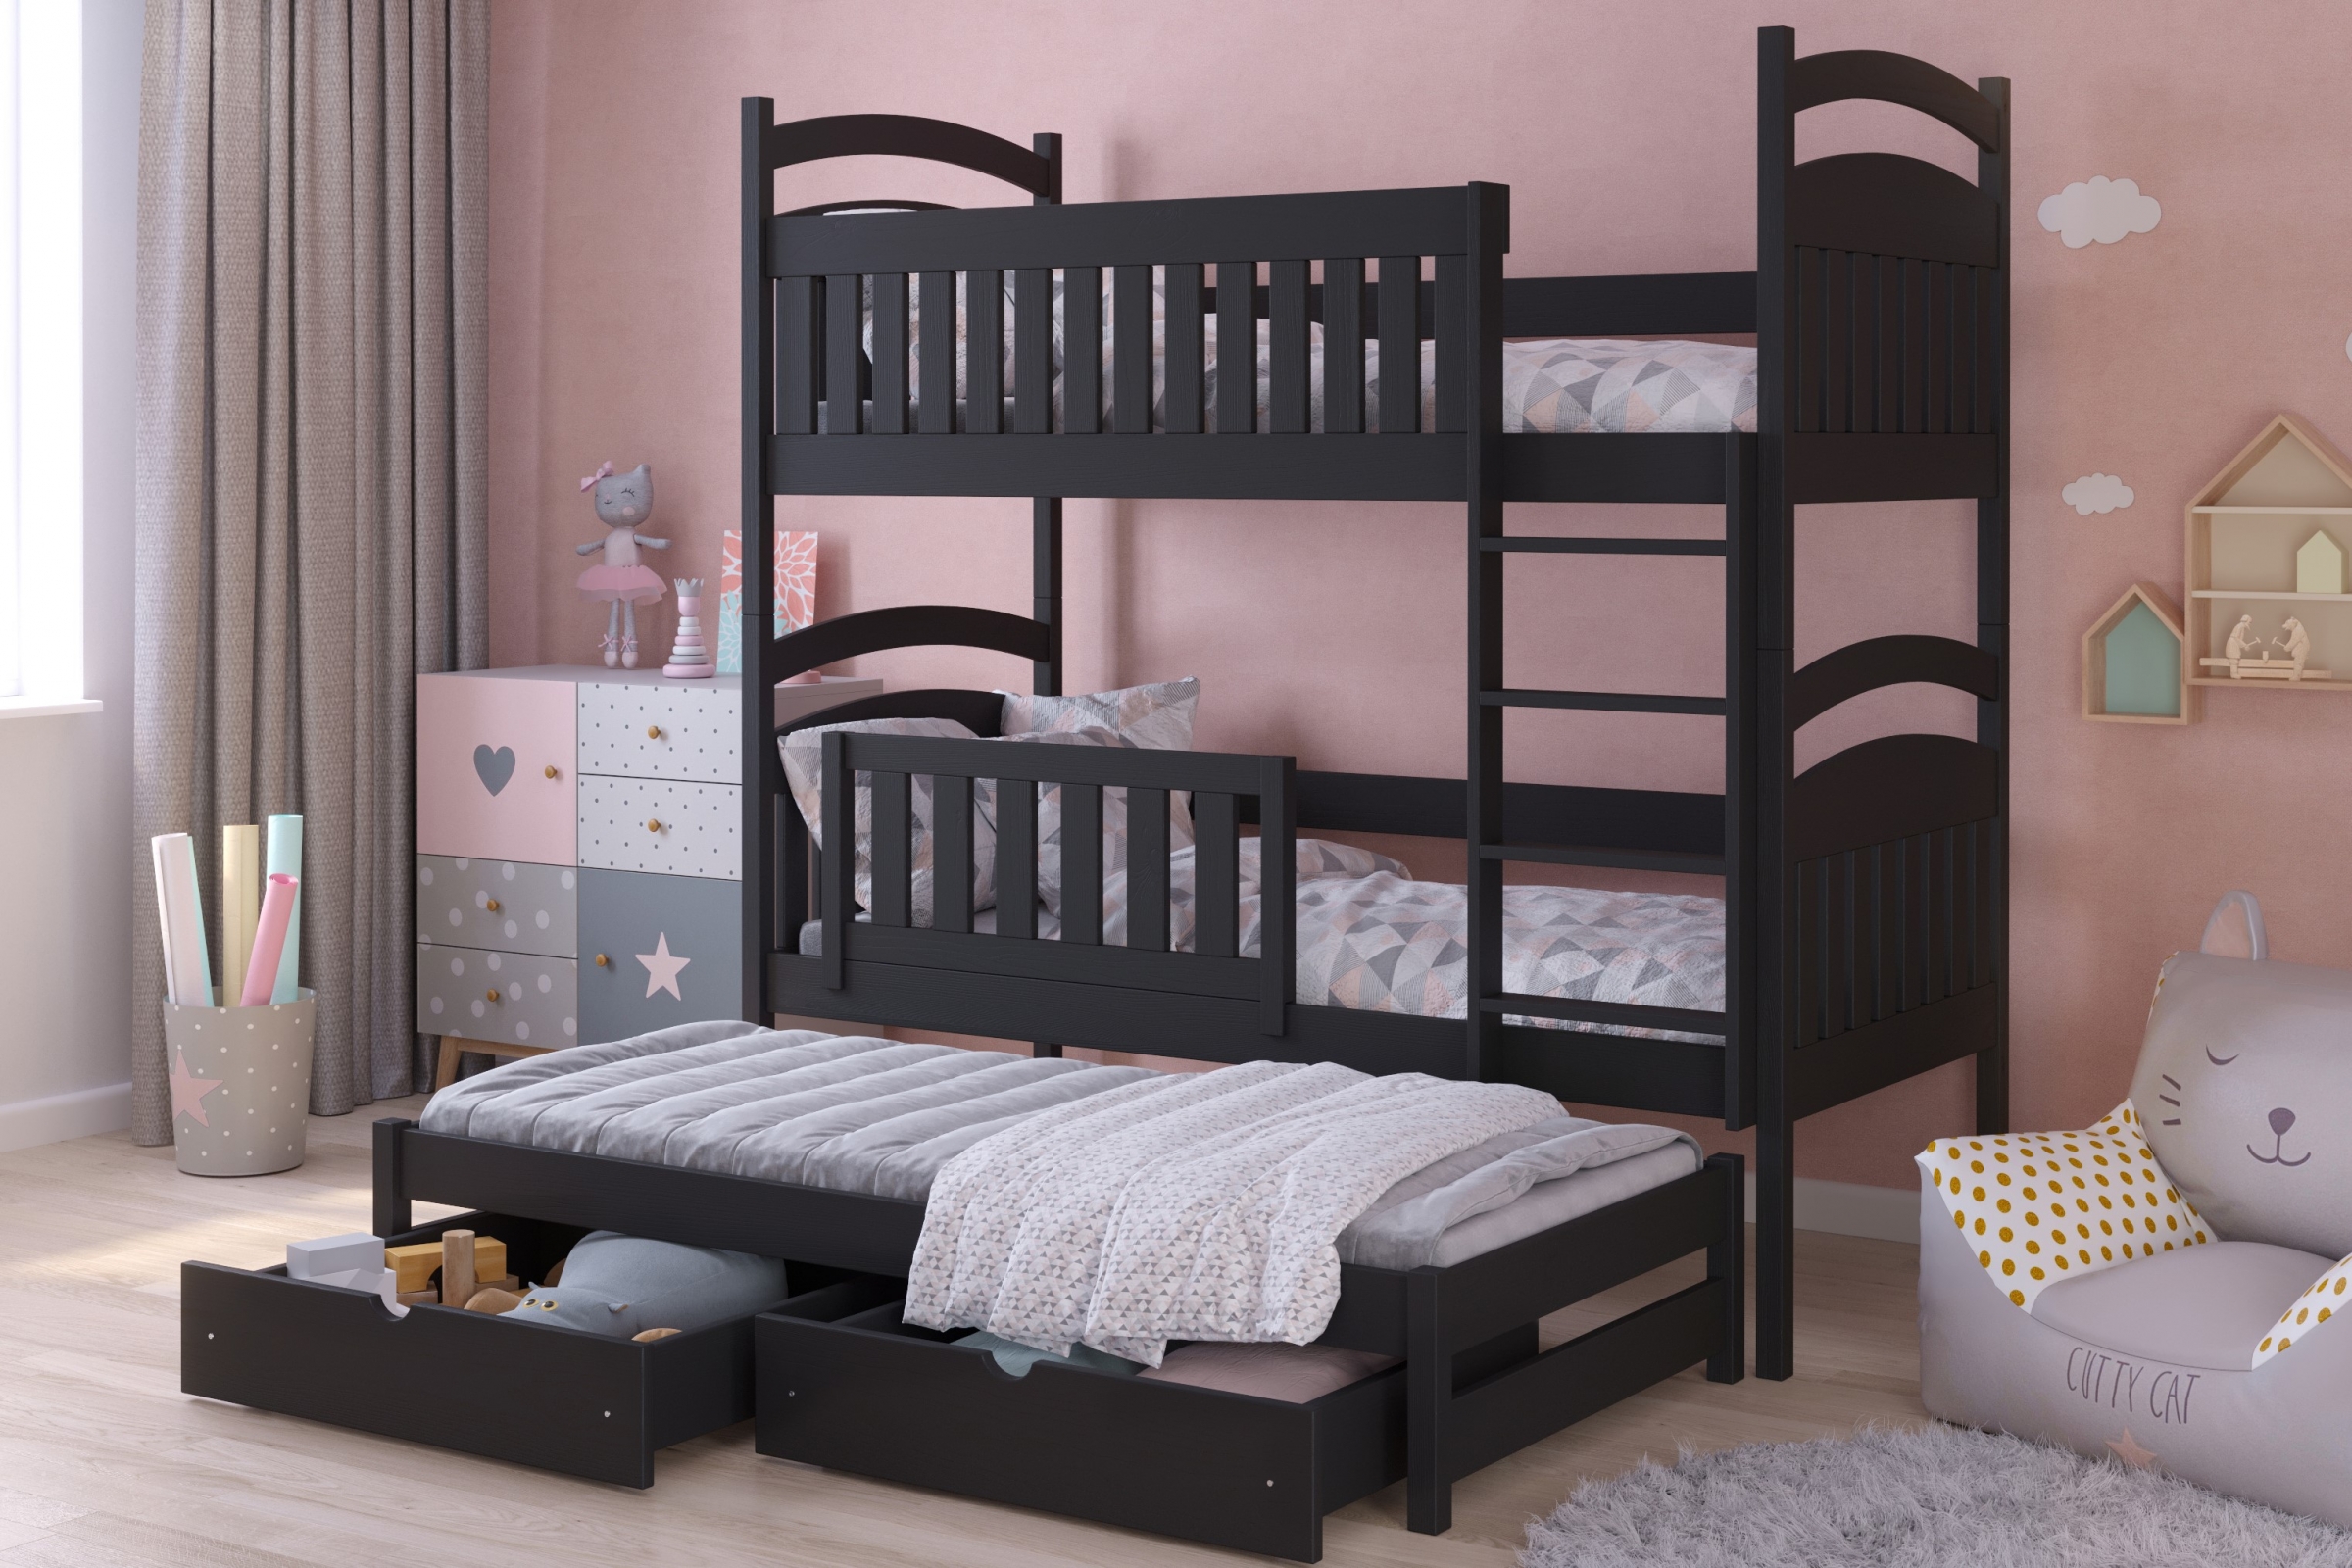 postel dětské patrová  výsuvná 3 os. Amely - Barva Černý, rozměr 90x180  postel dzieciece patrová  výsuvná 3 os. Amely - Barva Černý - aranzacja